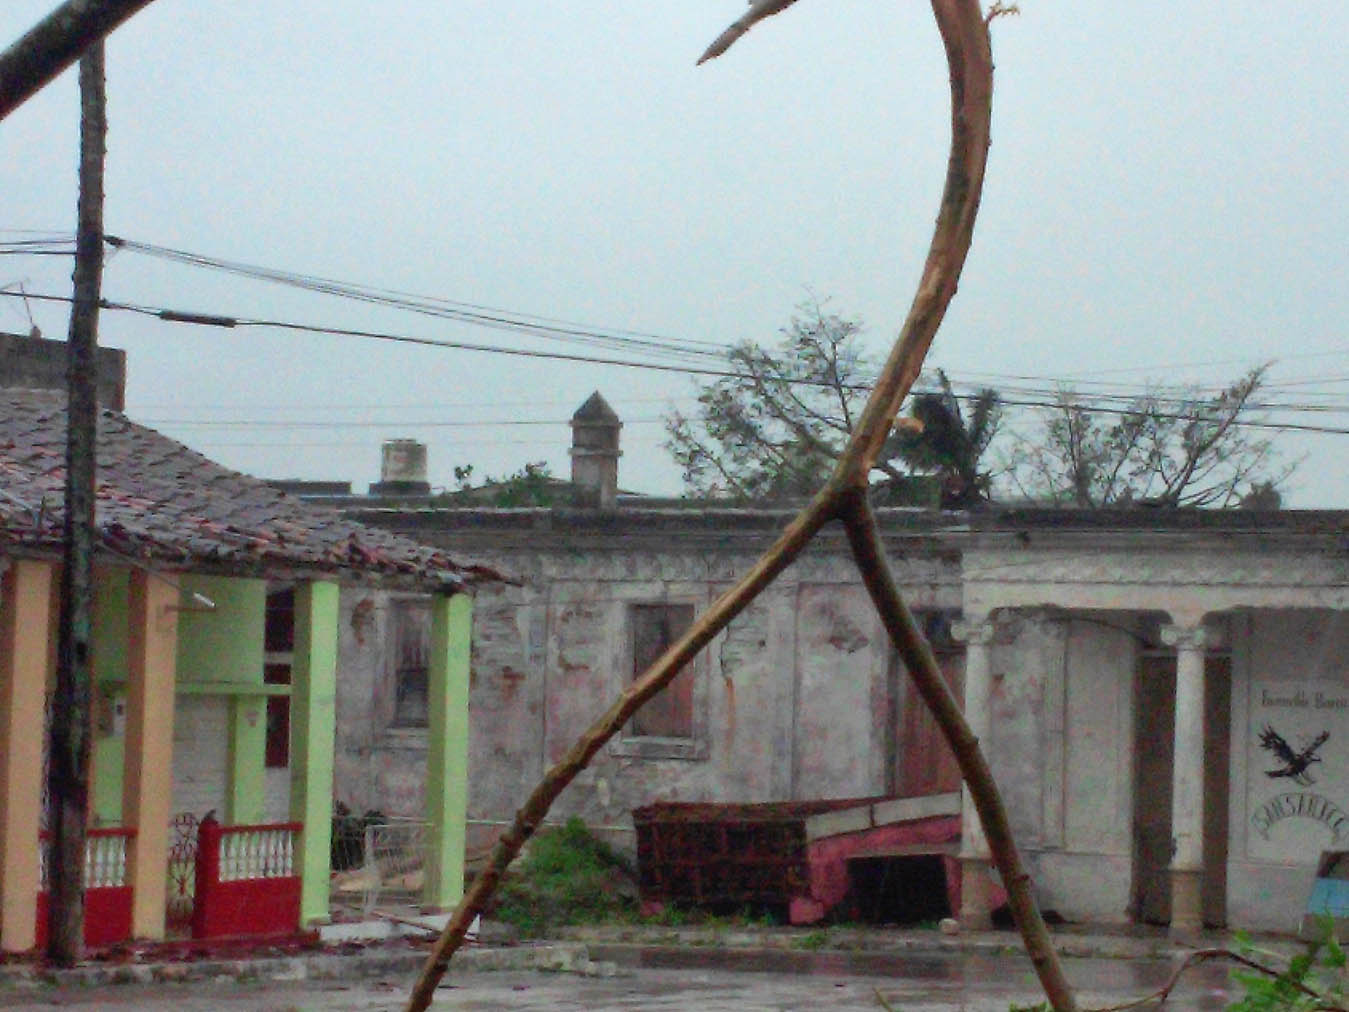 La ciudad de Yaguajay, en Sancti Spíritus , al paso del huracán irma por la costa norte de Cuba, el 9 de septiembre de 2017.